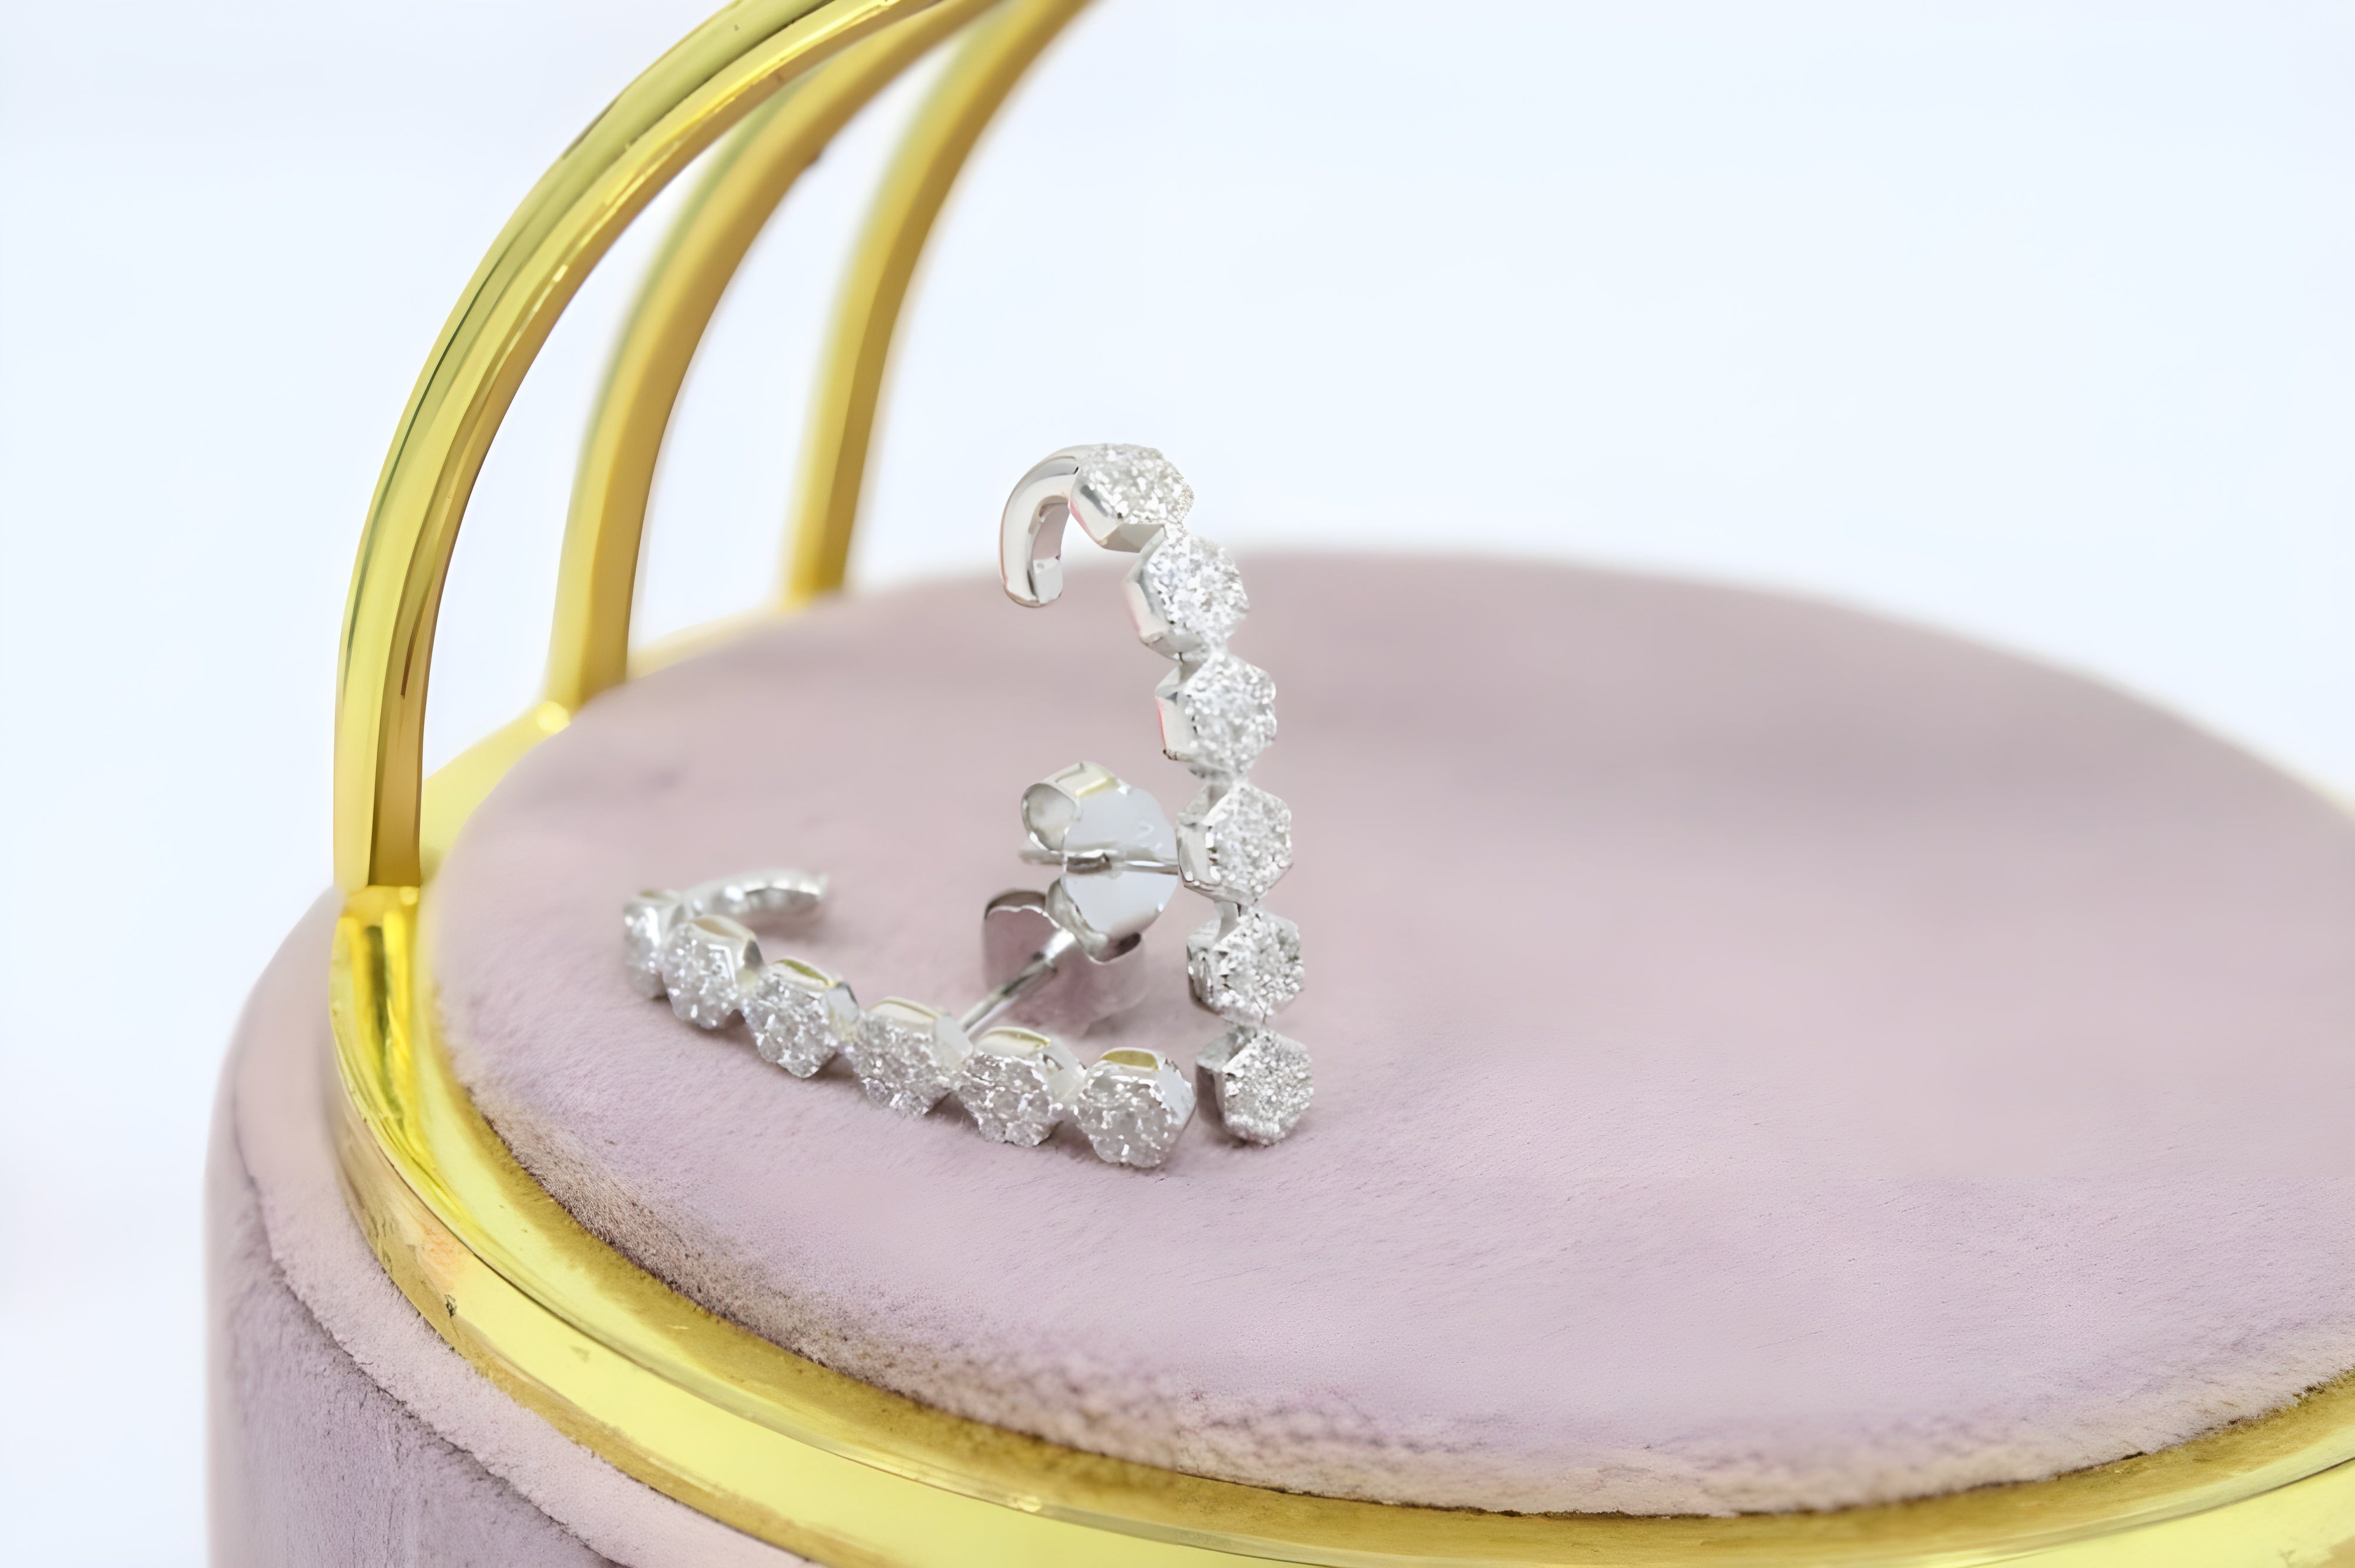 Sterling Silver Swarovski Crystal Enchanted Elegance Earrings